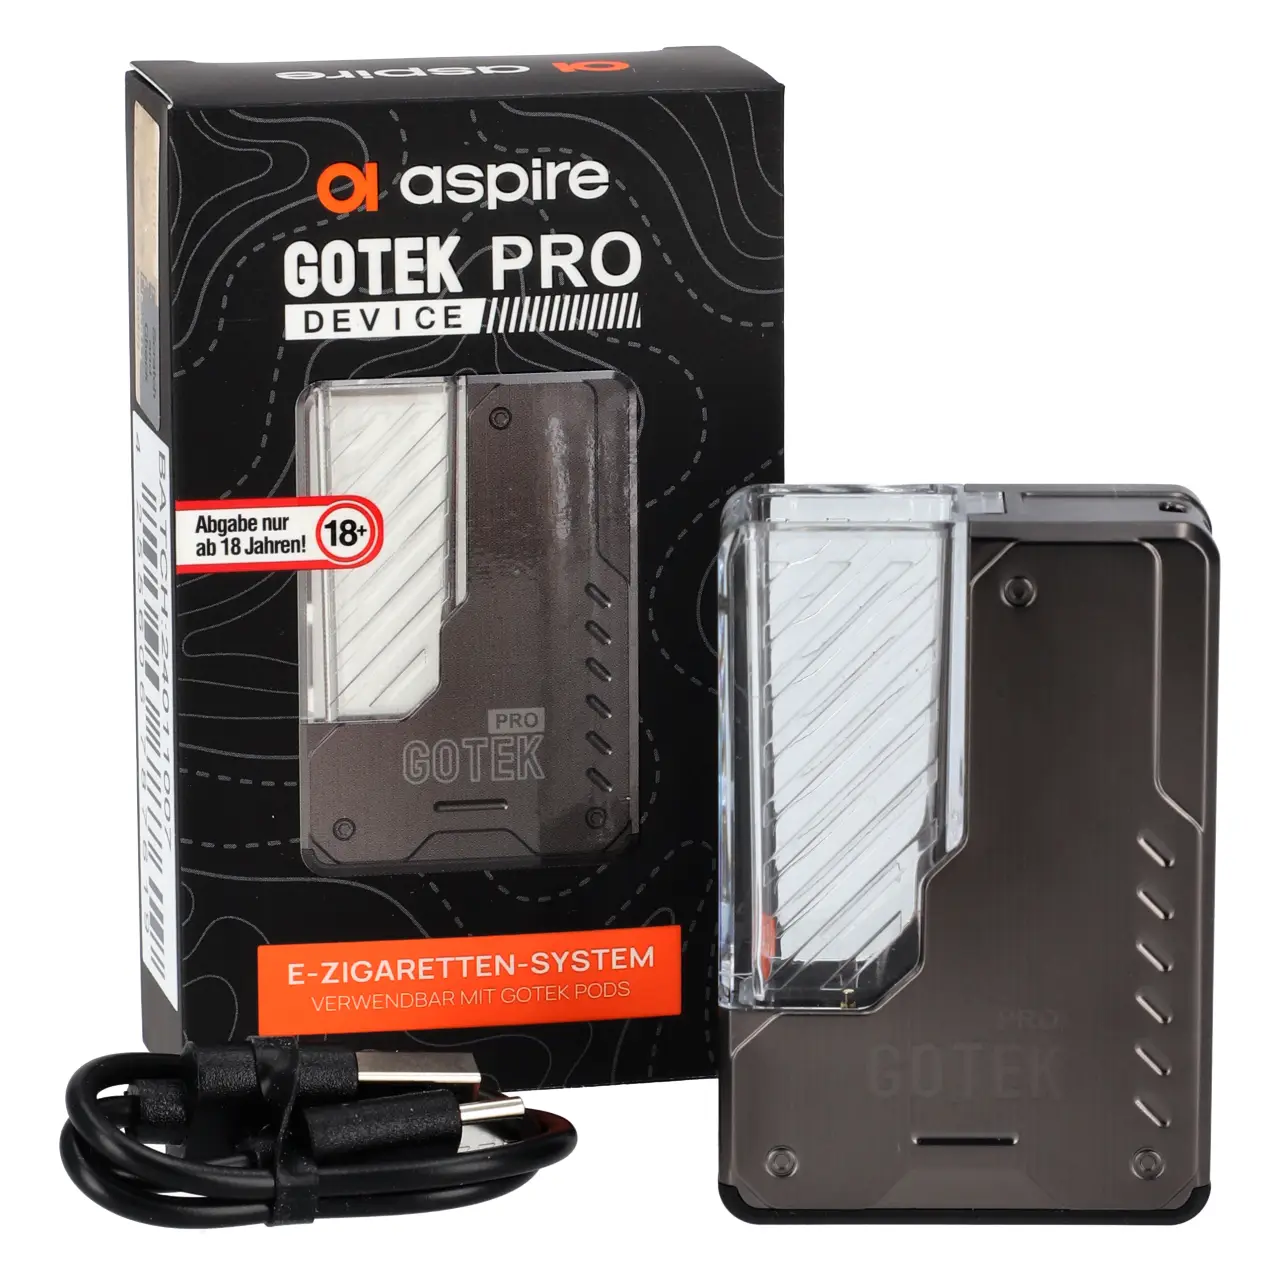 Aspire Gotek Pro Device mit Verpackung